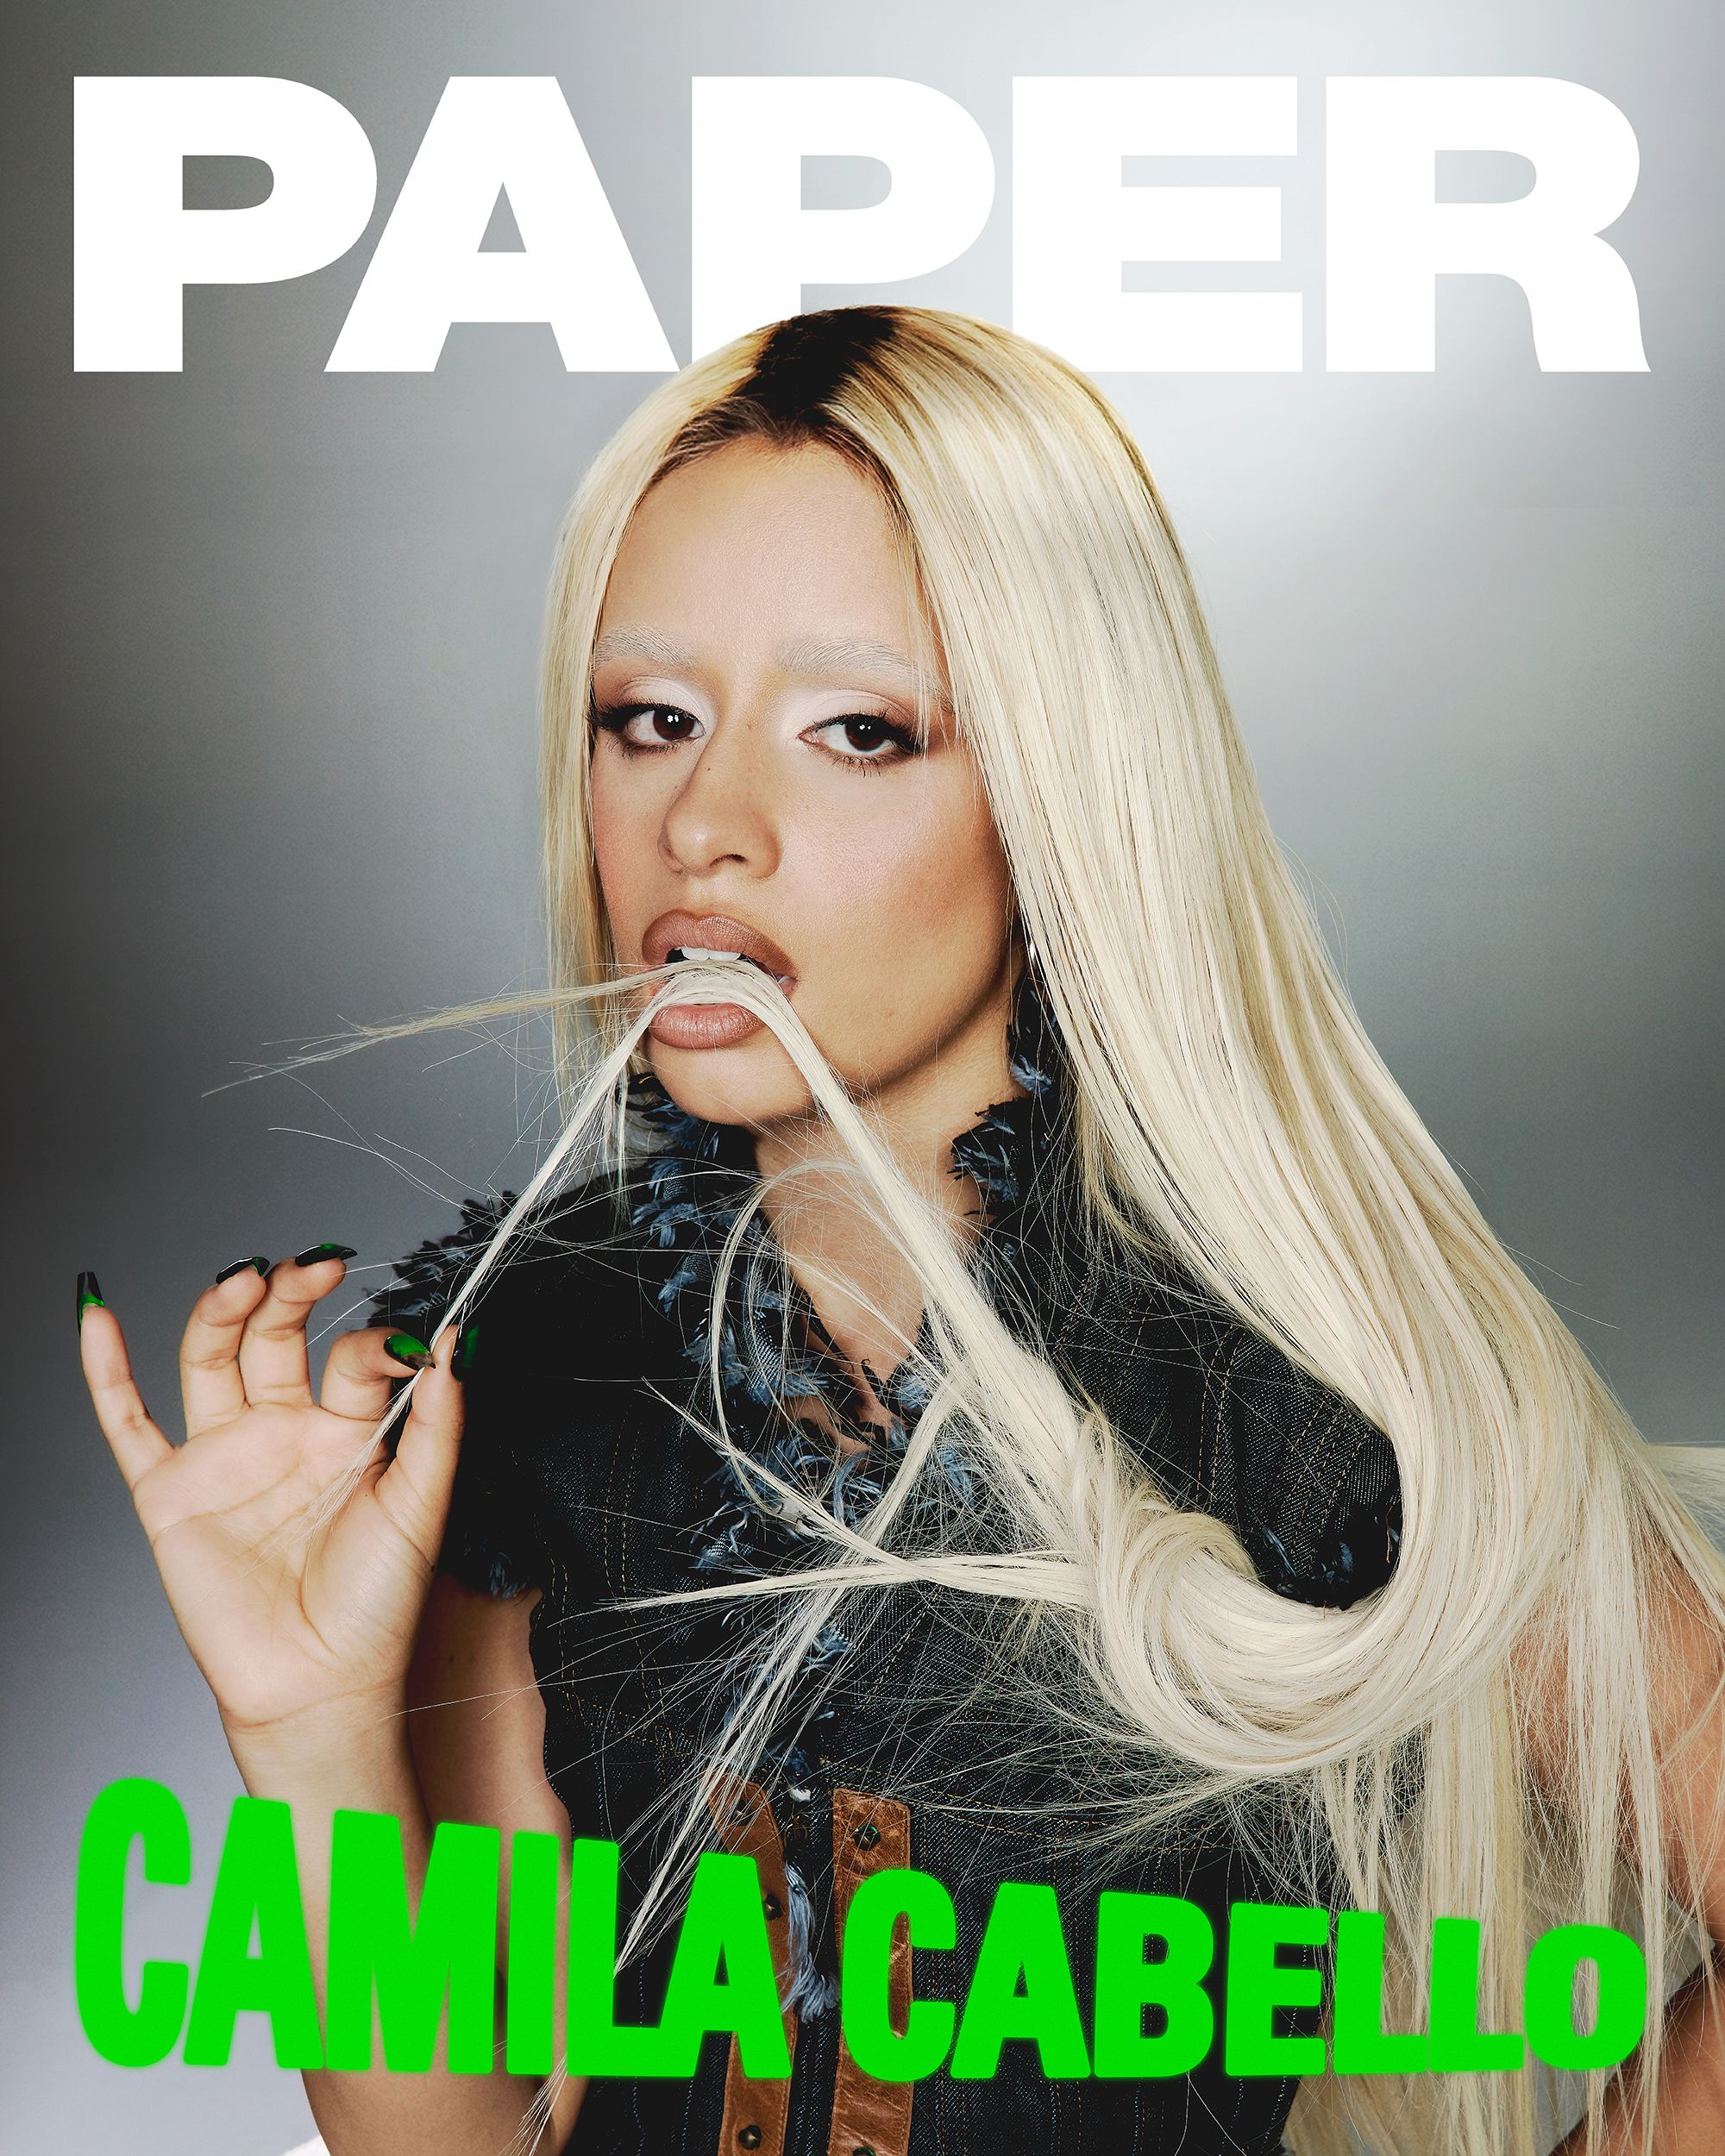 Camila Cabello on the Cover of PAPER Magazine - PAPER Magazine